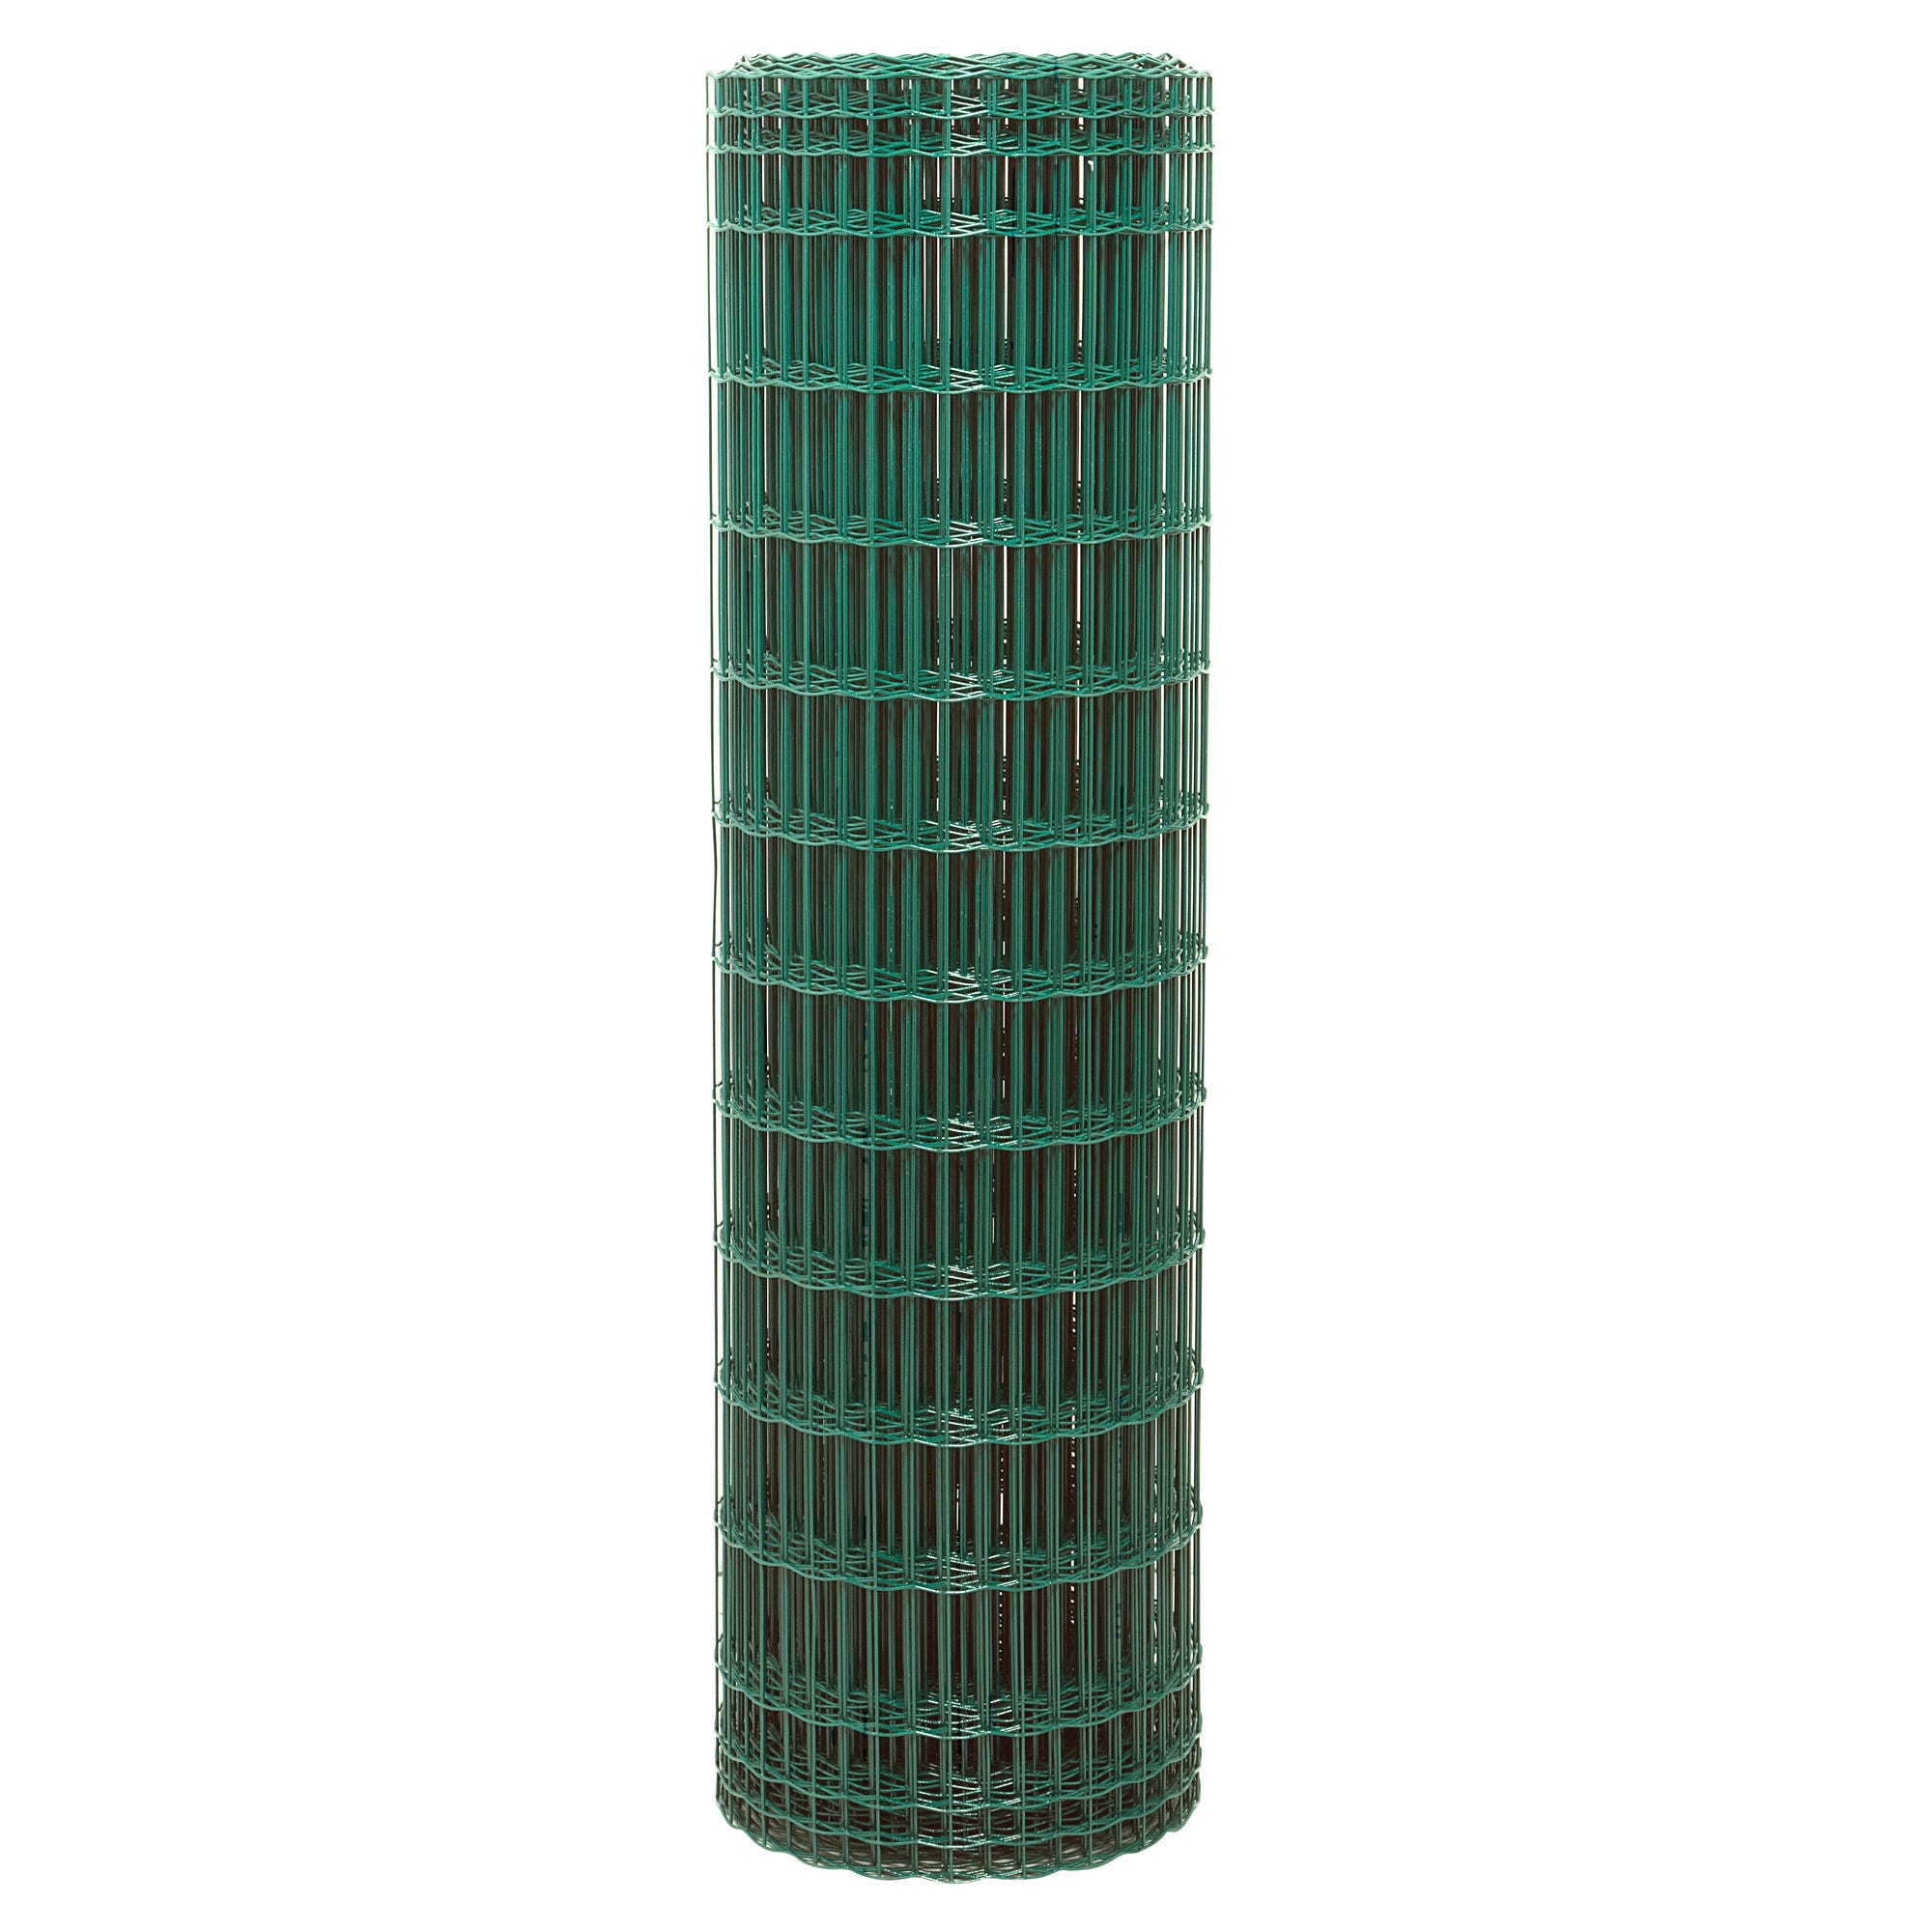 Grillage soudé pro vert maille 100 x 50 mm H.200 cm x L.25 m 0